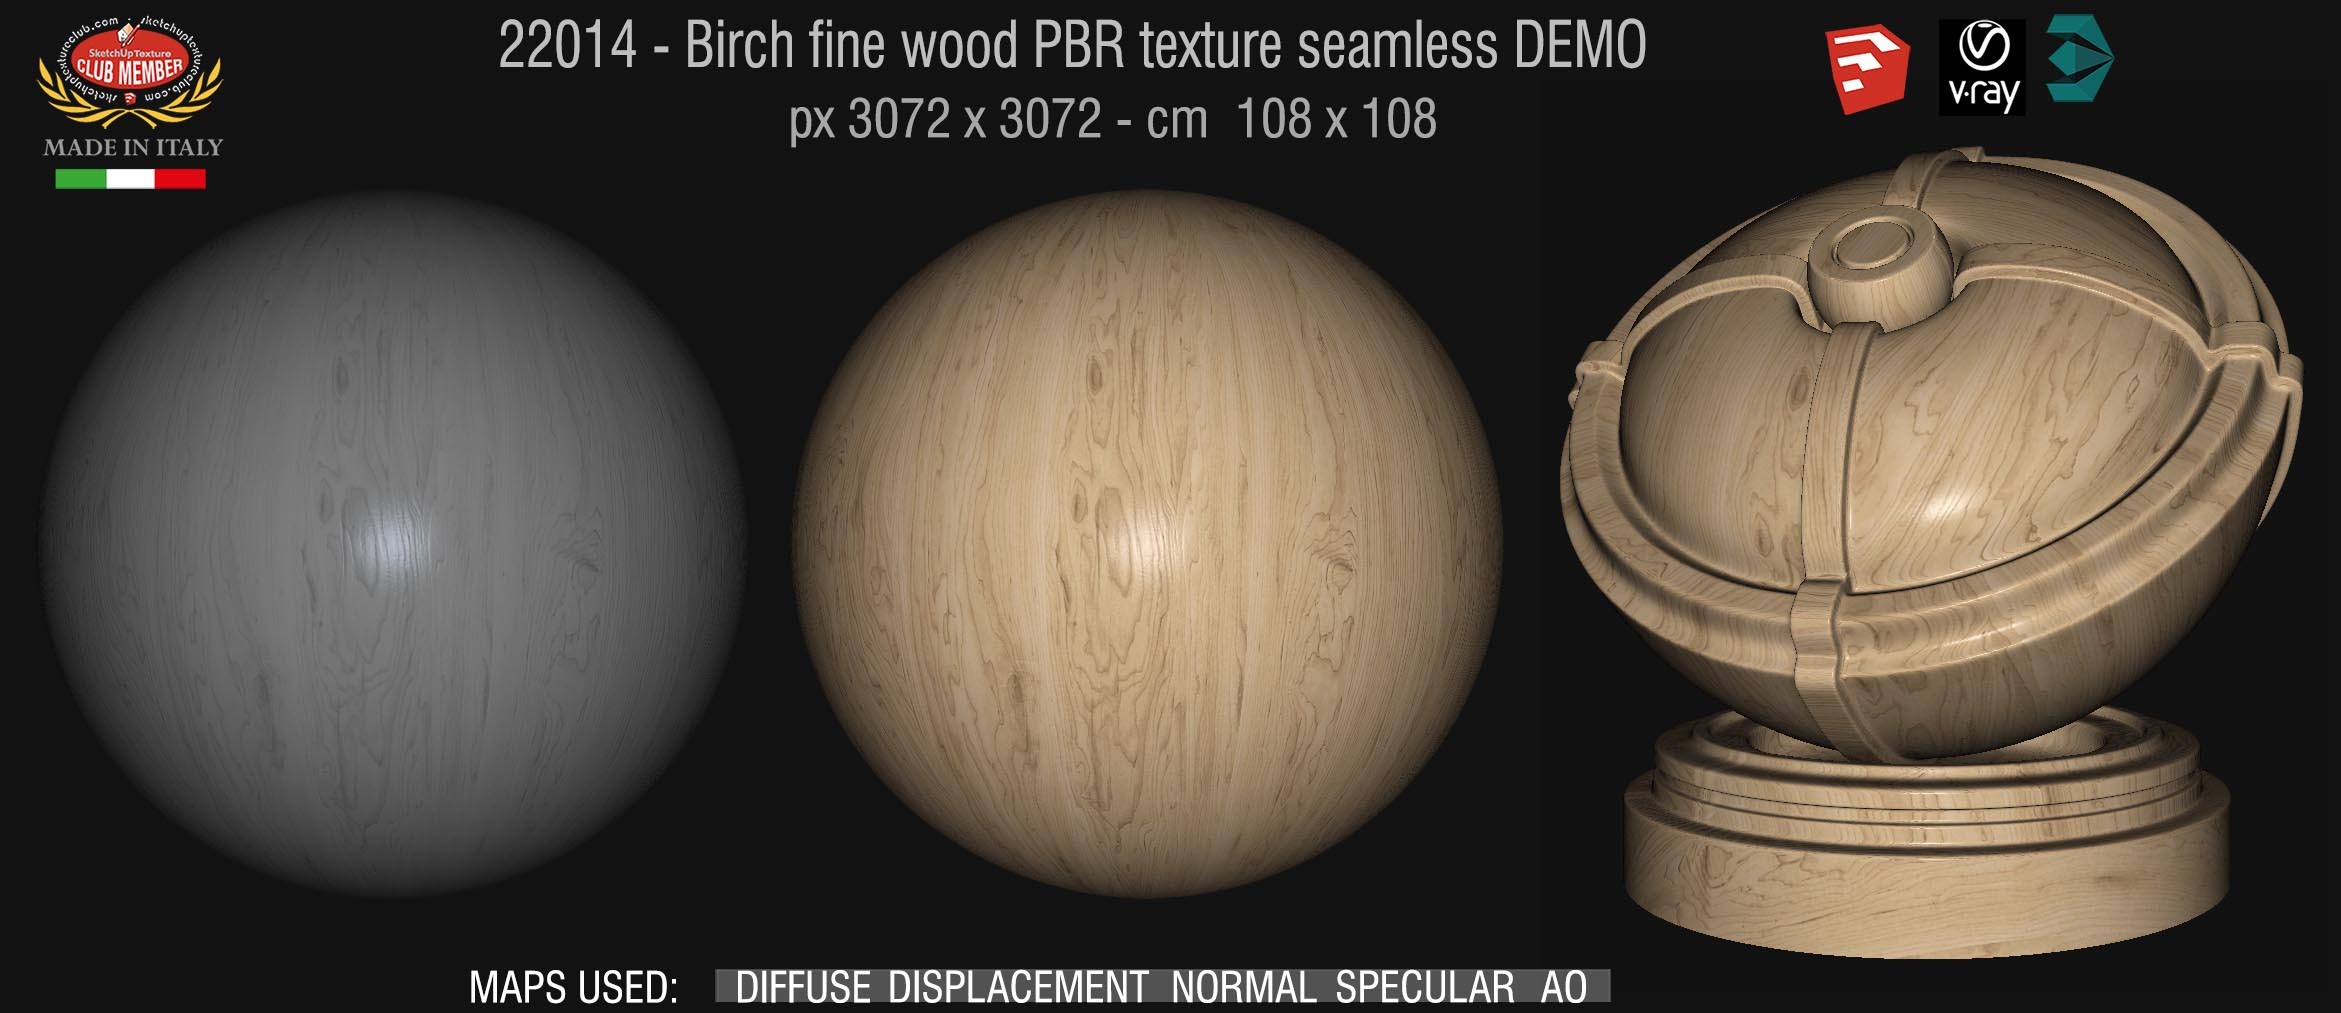 22014 Birch fine wood PBR texture seamless DEMO